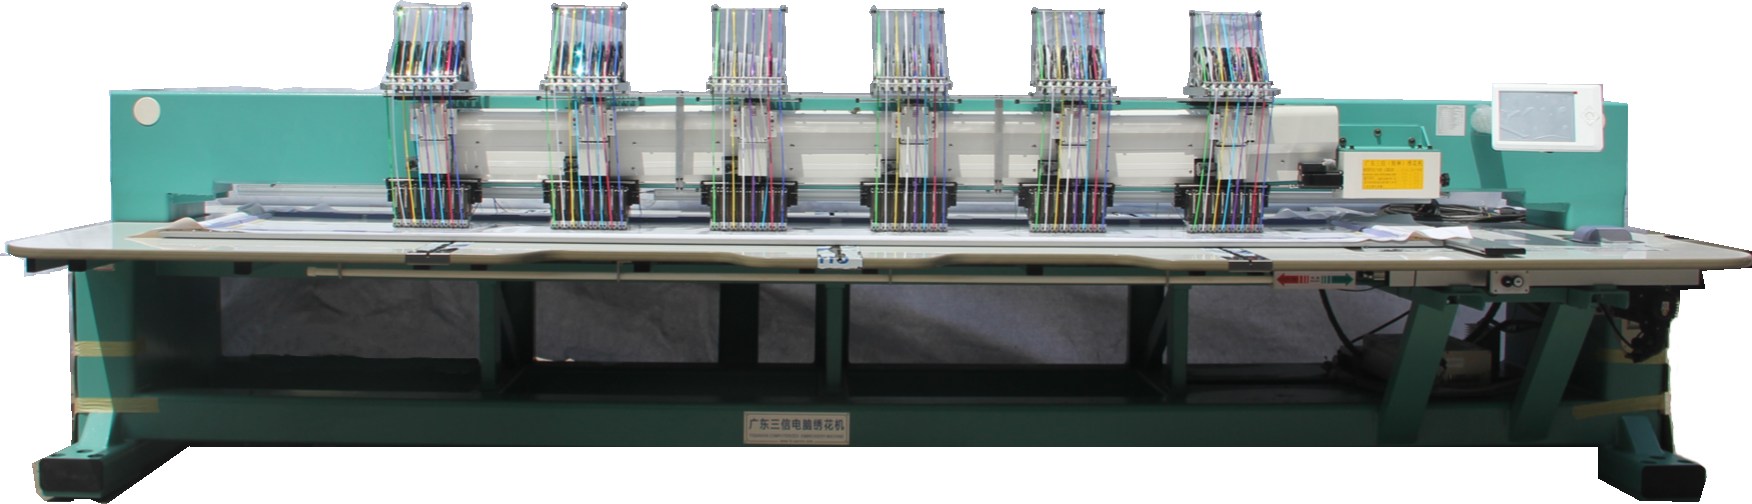 SXPT806 精品排图排片机